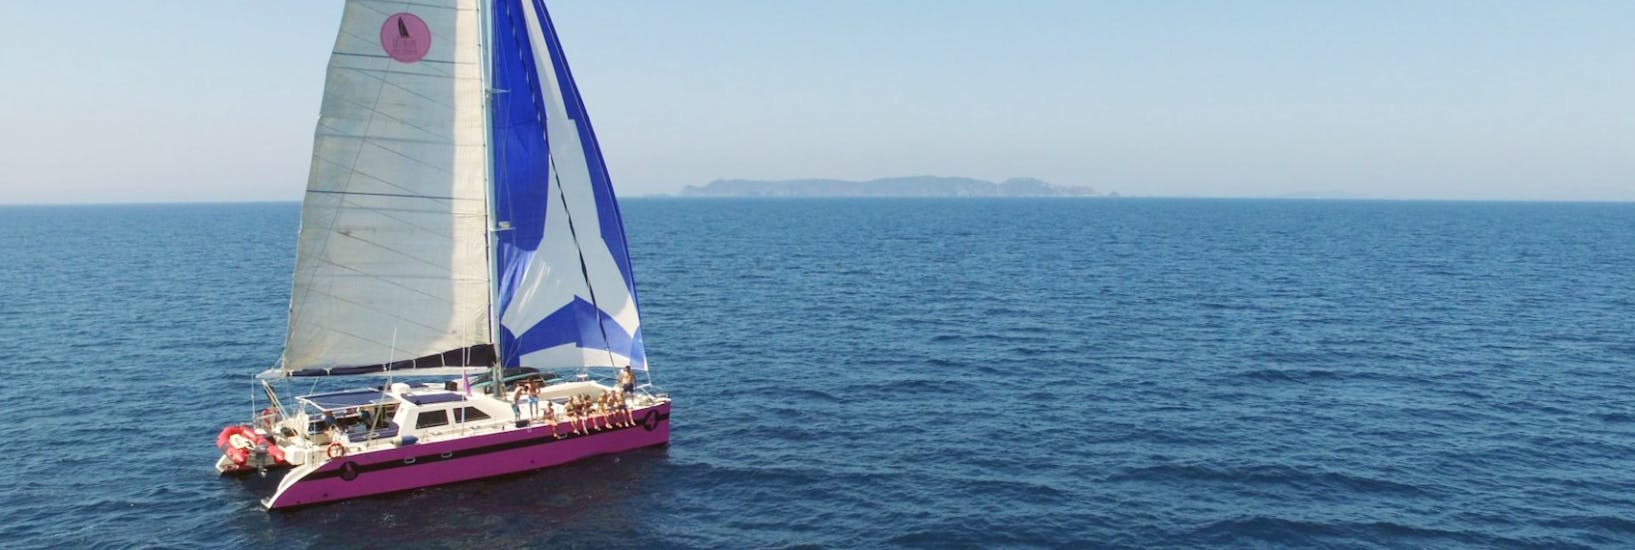 Vista durante la gita in barca nel Golfo di Morbihan con Caseneuve Maxi Catamarano.